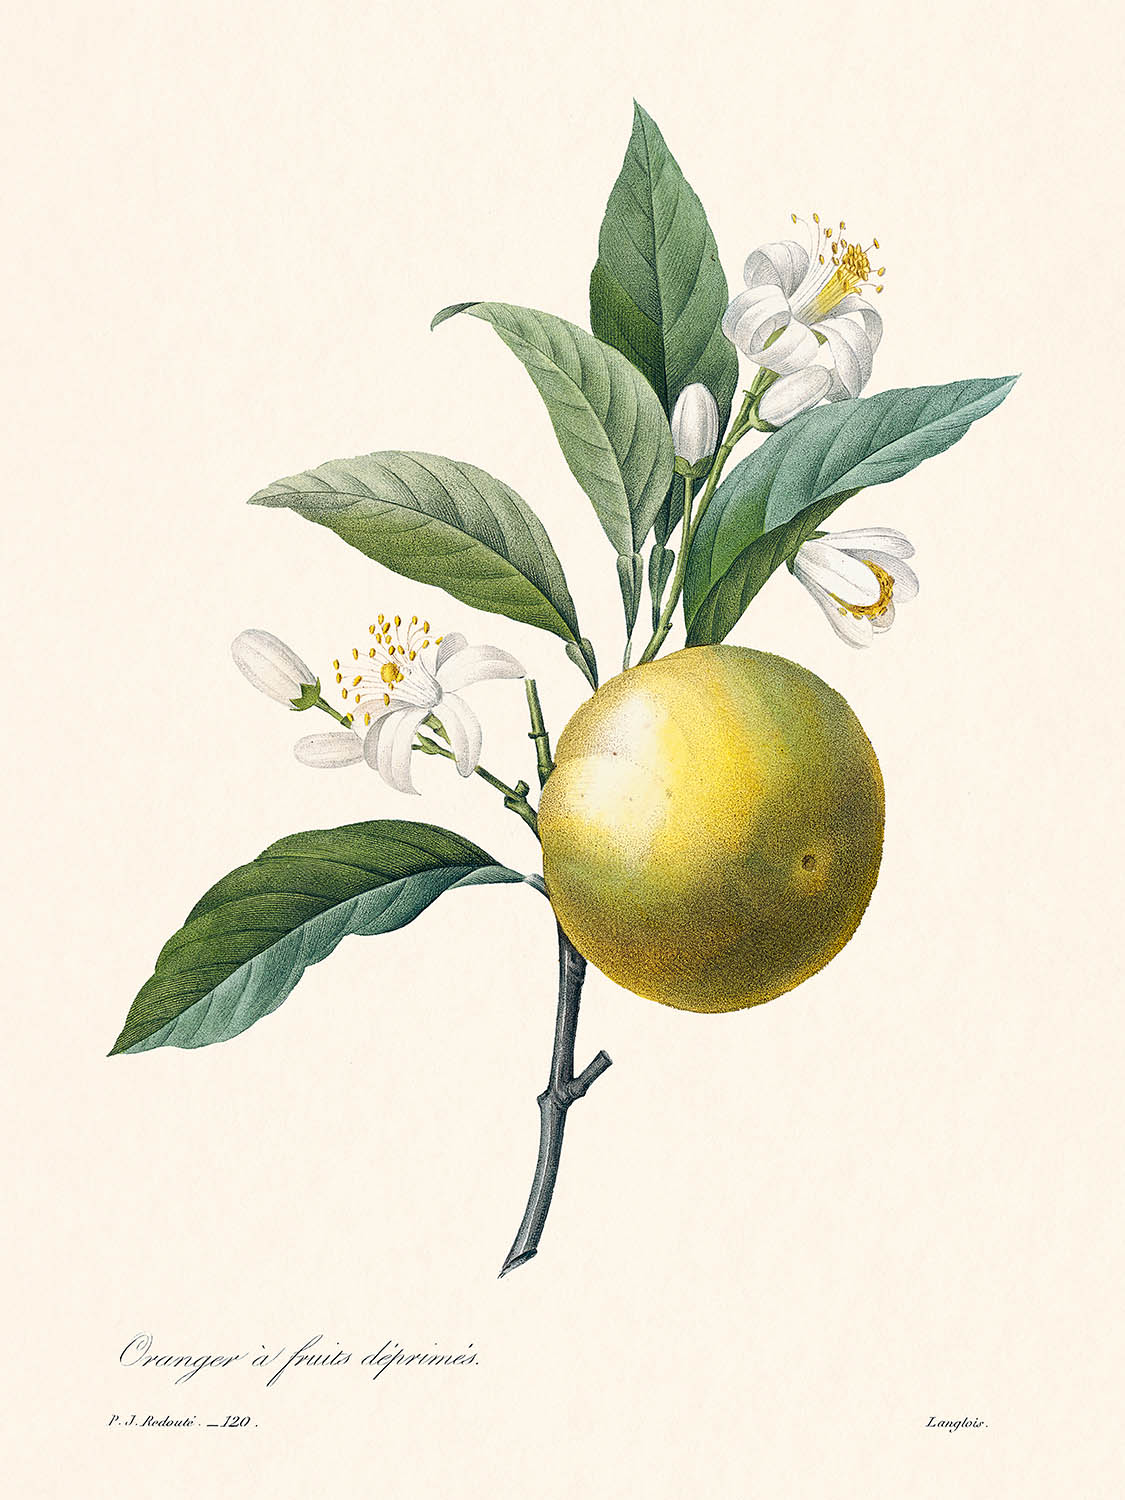 Naranja de Pierre-Joseph Redouté, 1827